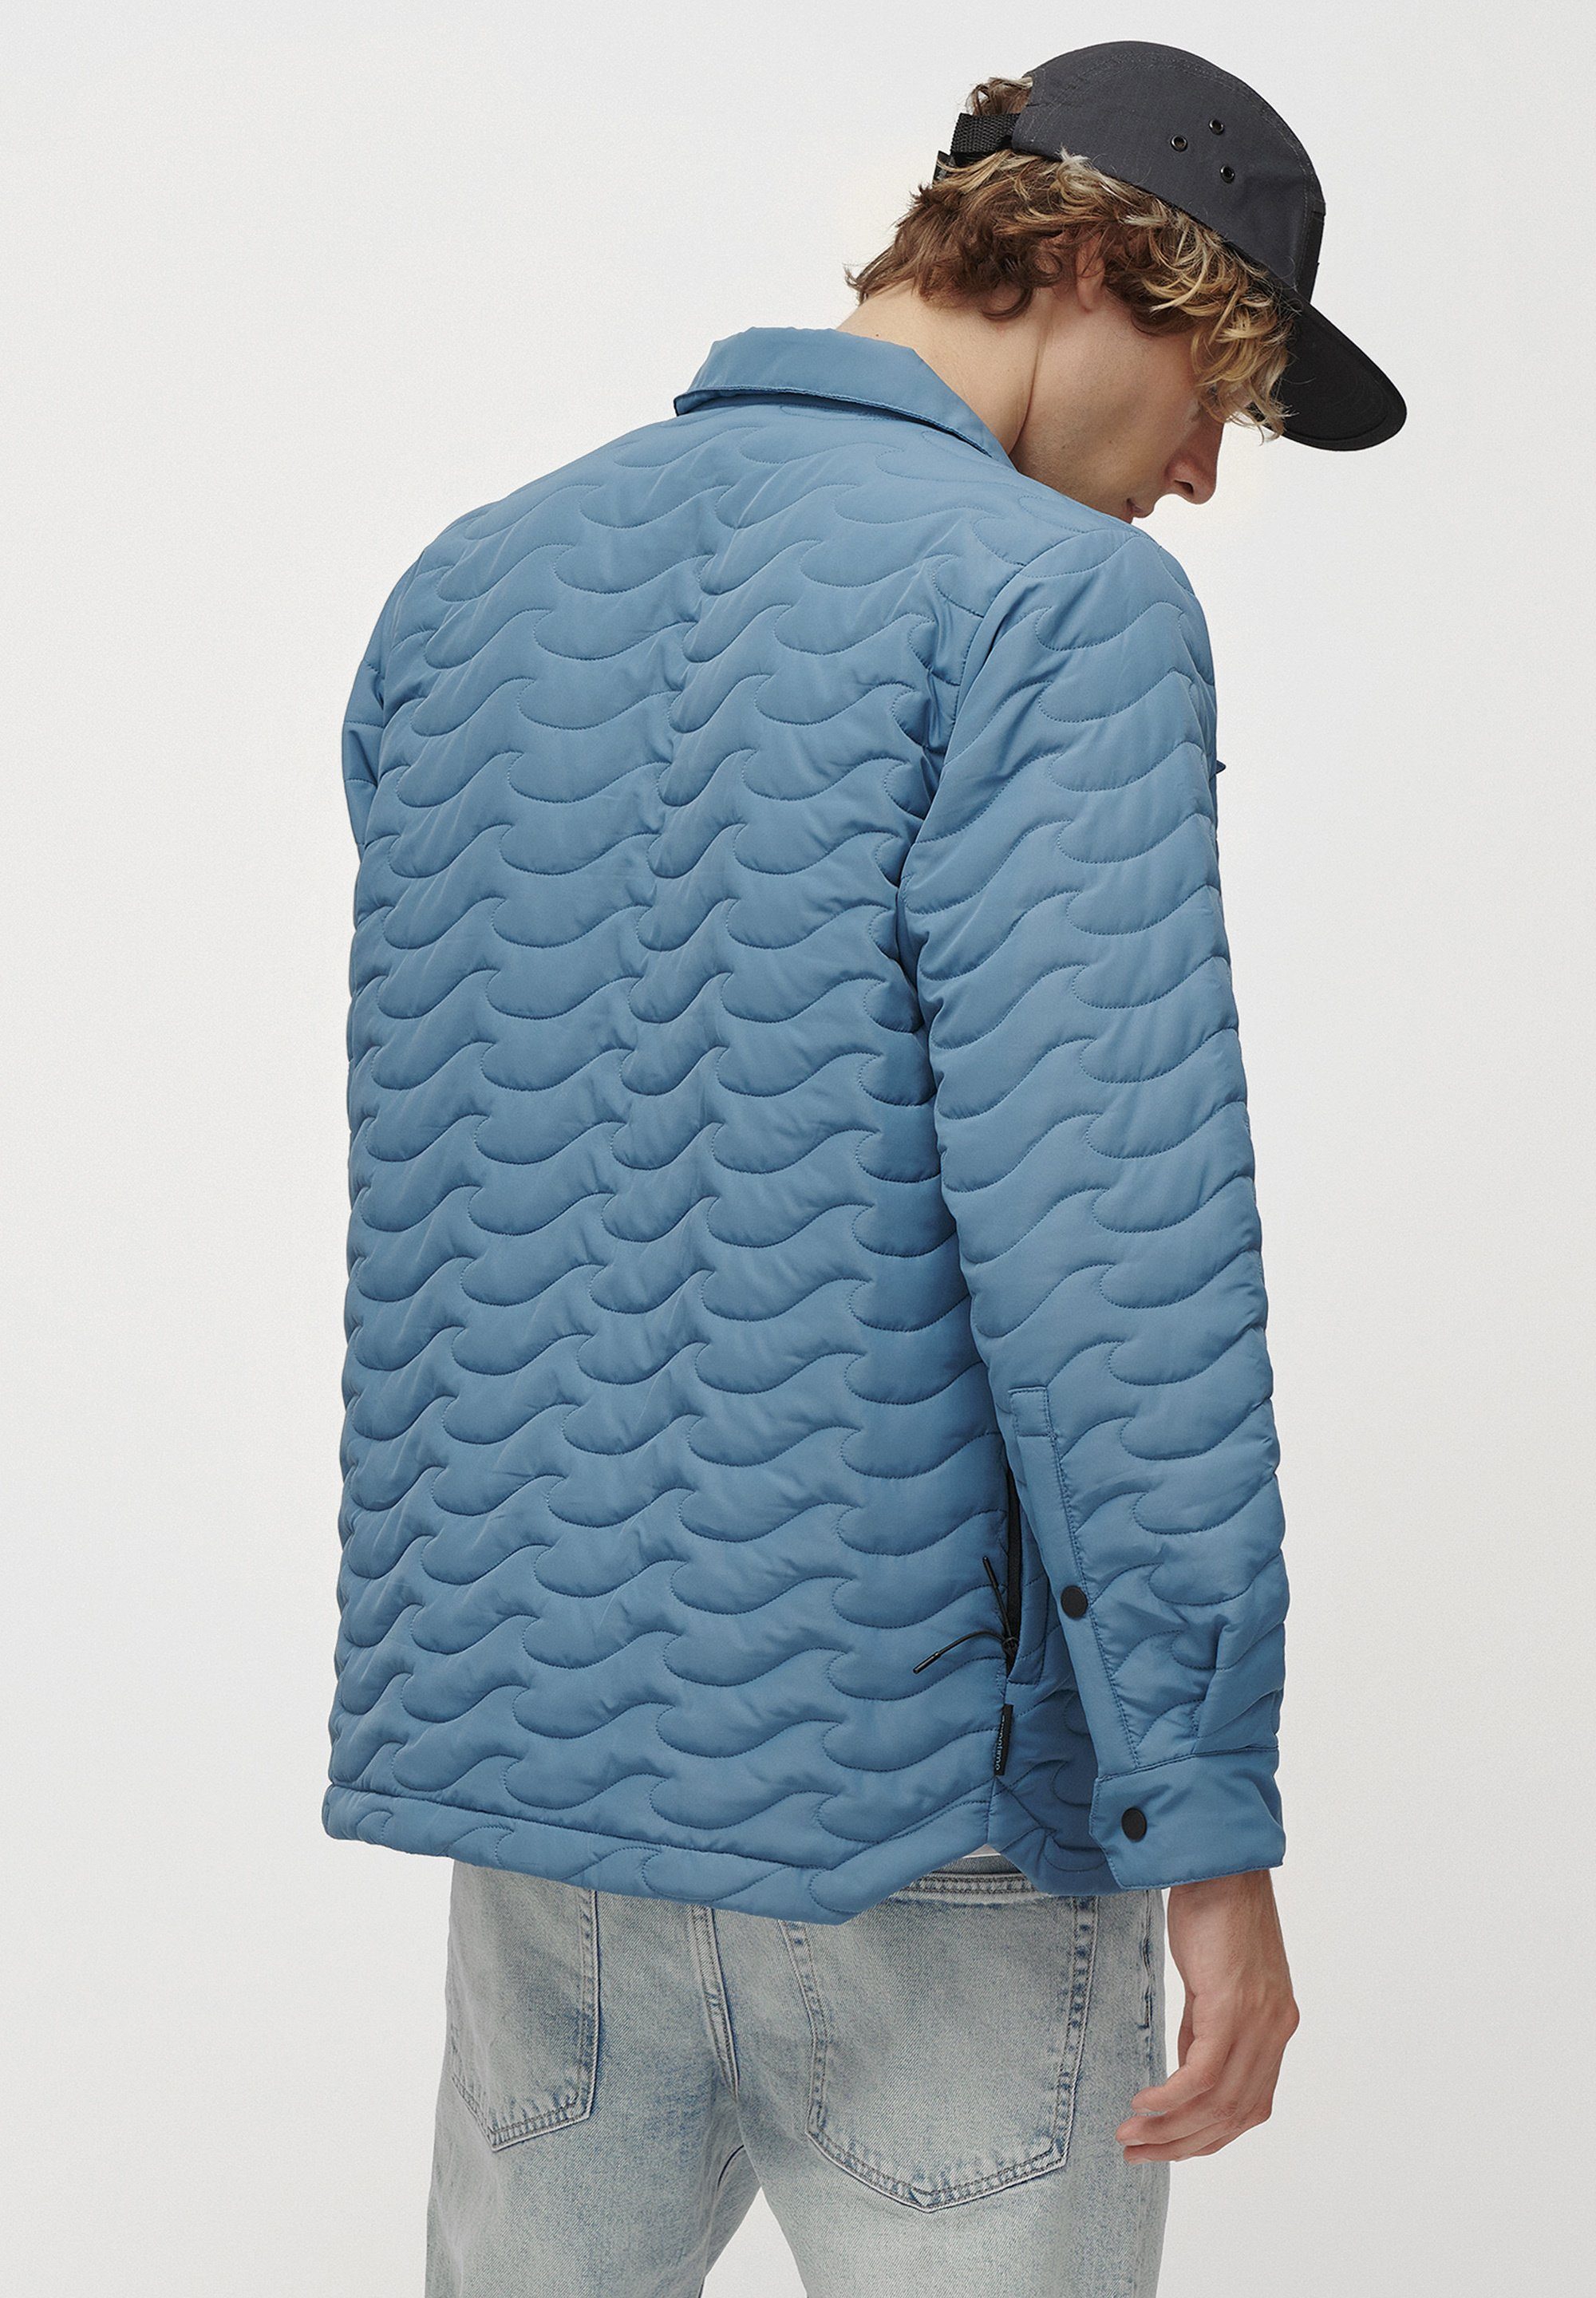 Jacket Insulated und gekleidet. Hemdjacke Sie unserer Wave Pinetime bluestone New stilvoll sind Steppjacke isolierten Mit warm Clothing